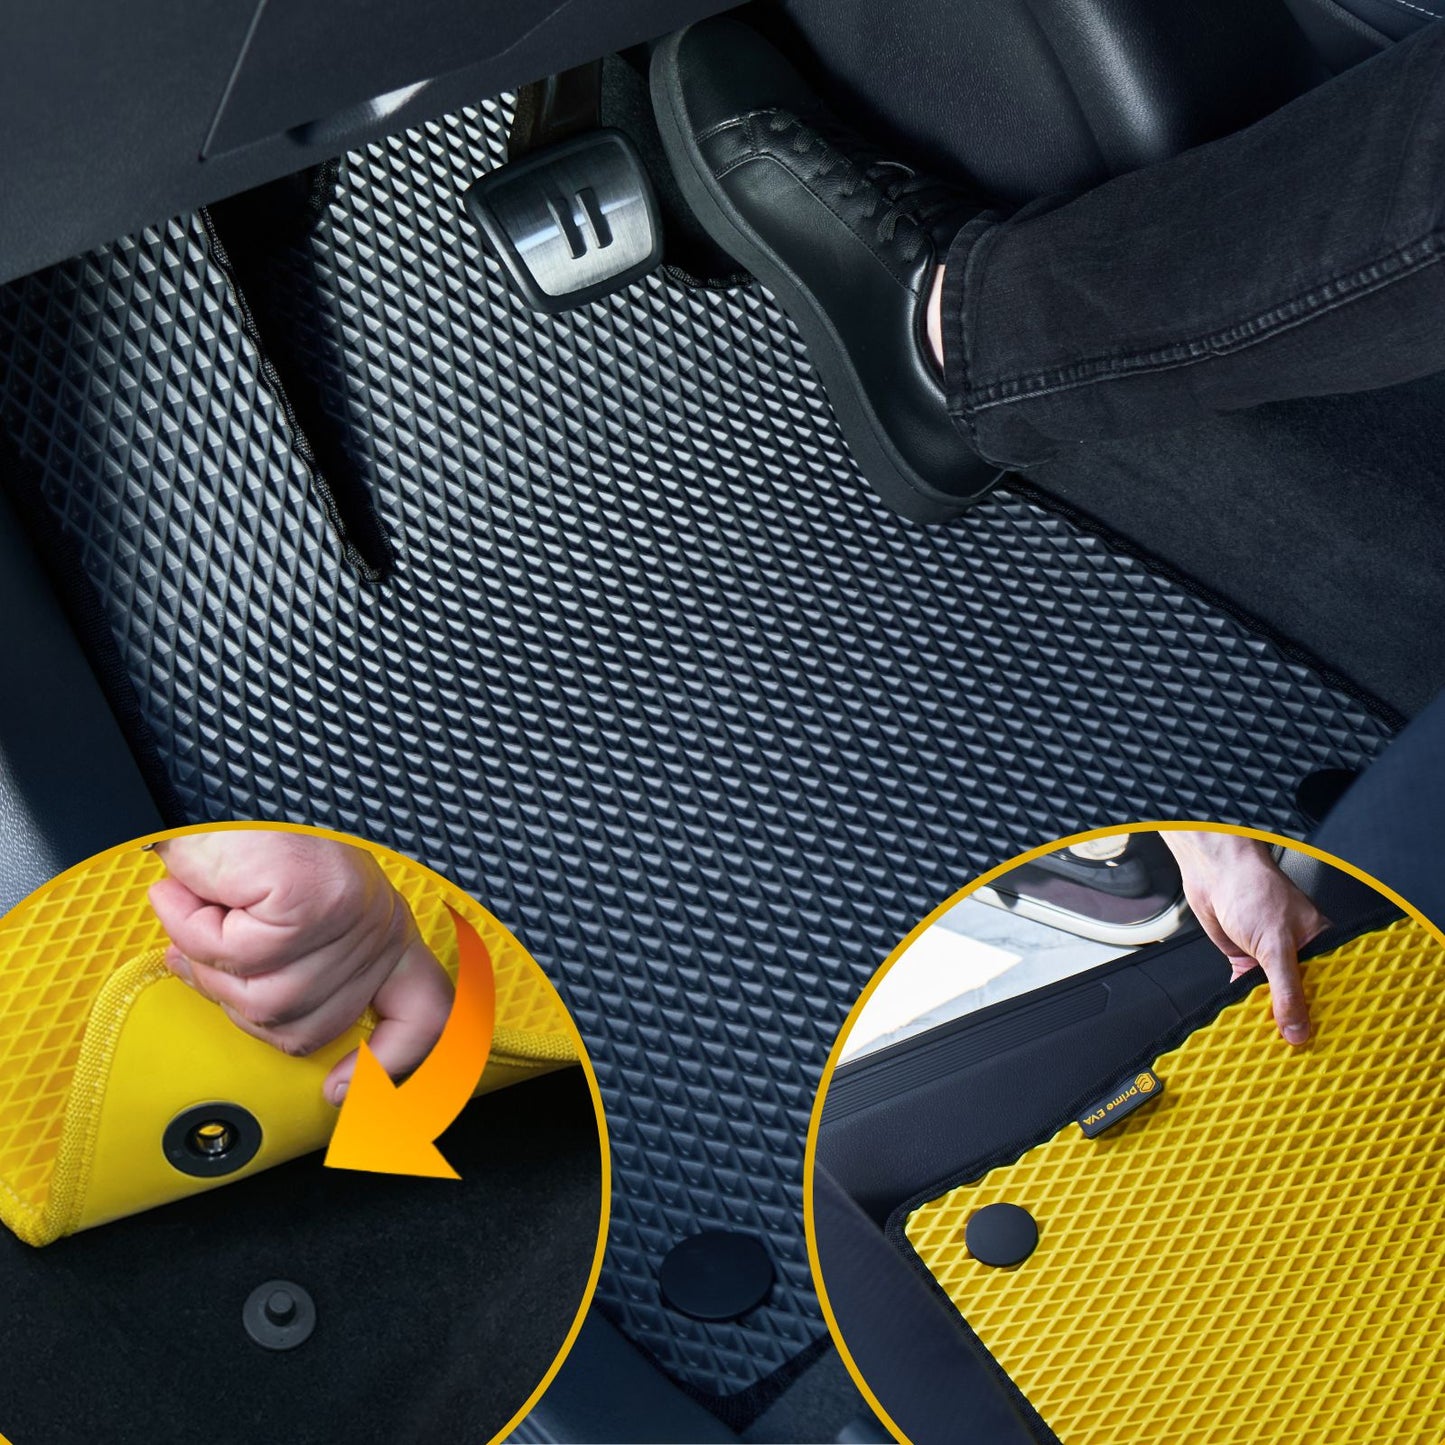 Vastupidava ja turvalise istuvusega EVA-mati paigaldamine autosse.